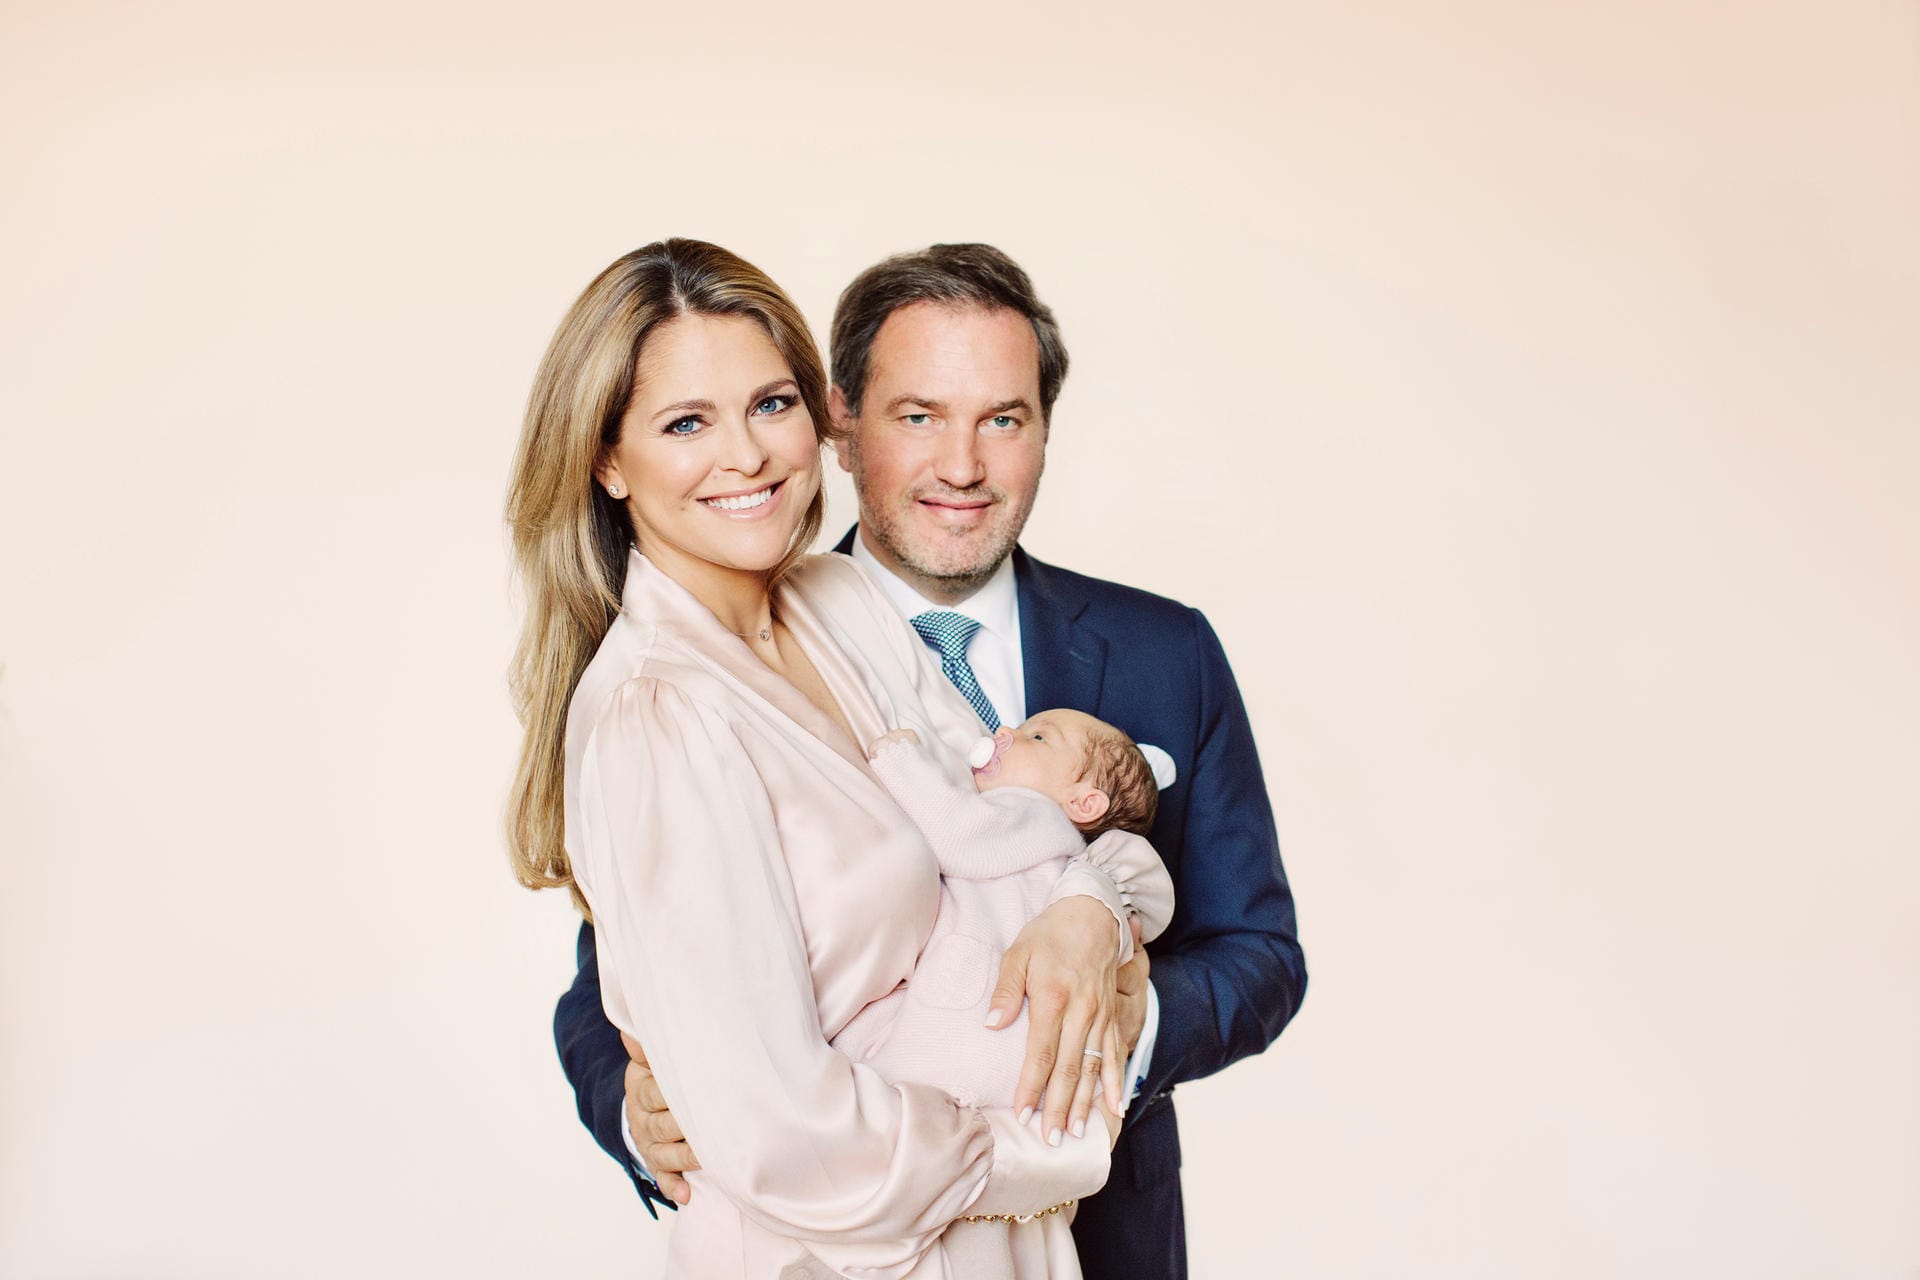 Und hier das Nesthäkchen mit seinen Eltern: Am 9. März 2018 brachte Prinzessin Madeleine ihre jüngste Tochter Adrienne zur Welt.